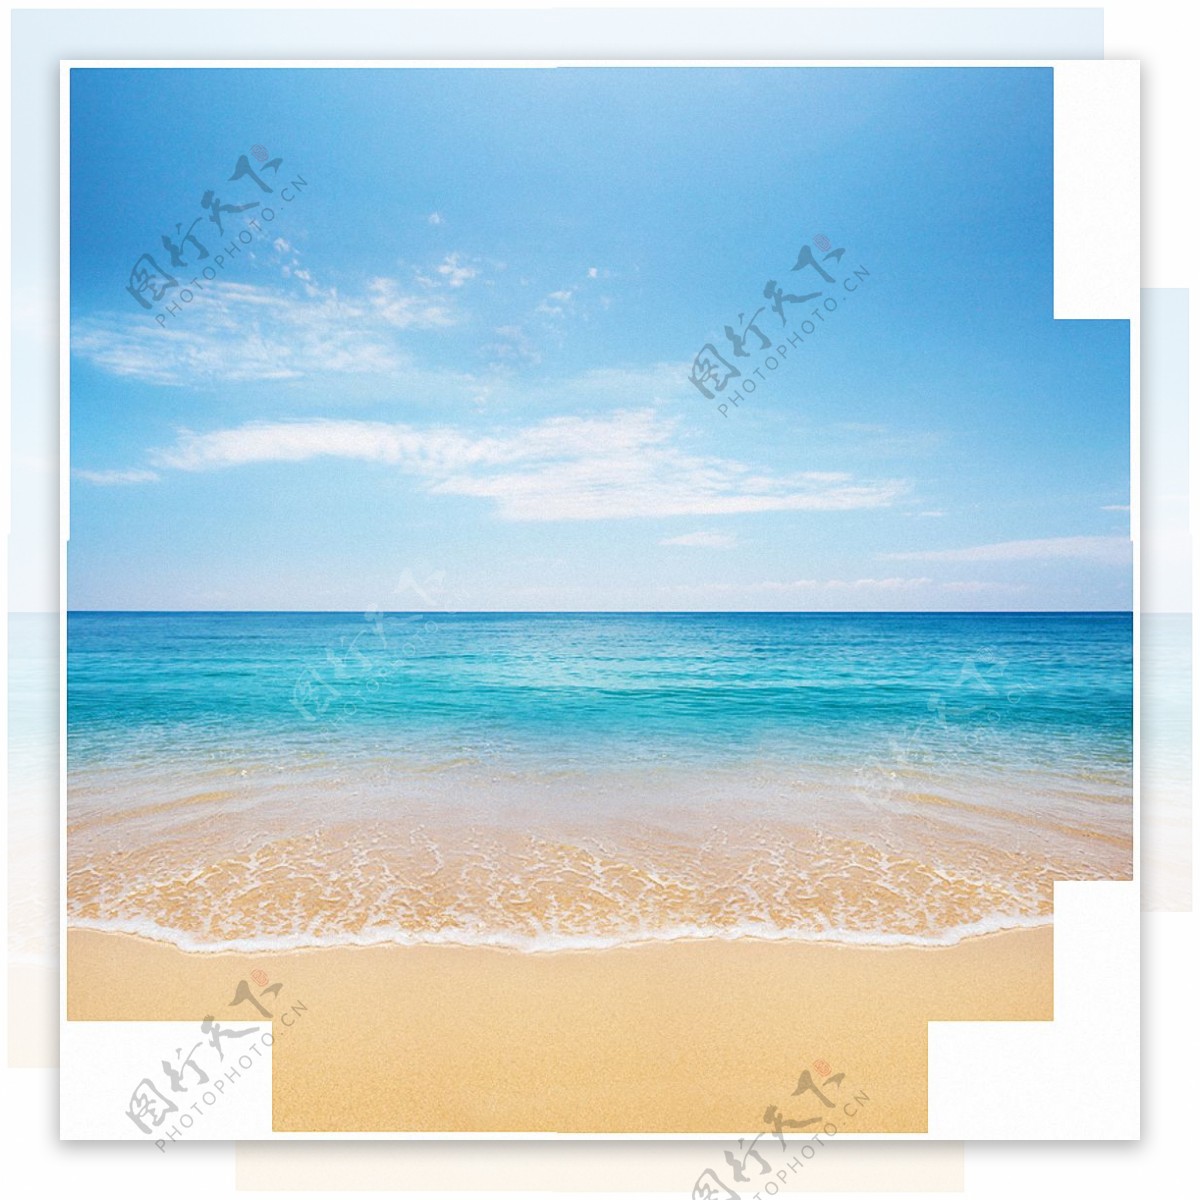 圆形沙滩大海背景免抠png透明素材